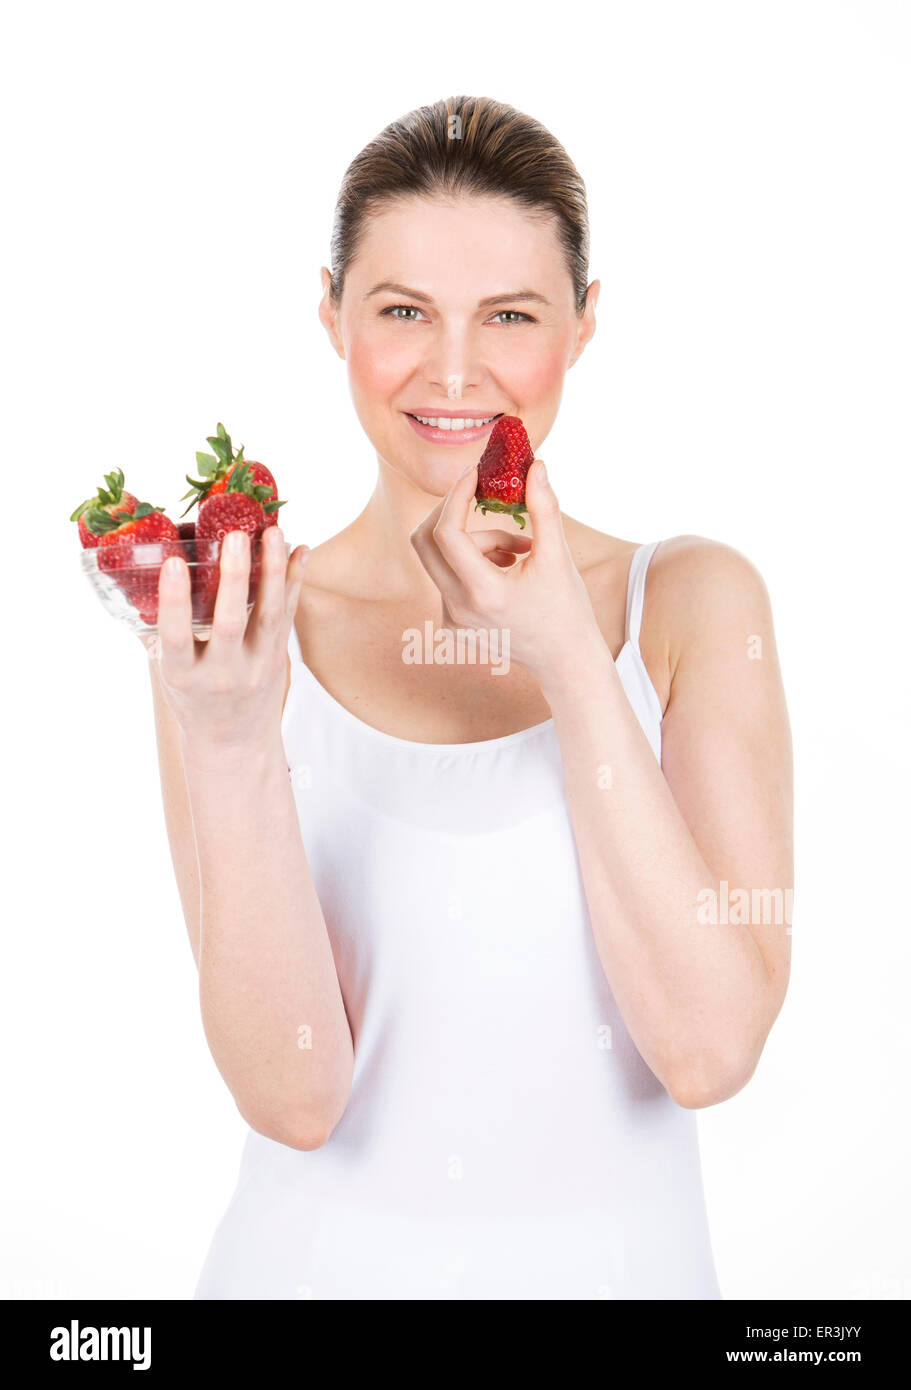 Femme avec robe blanche tenant quelques fraises Banque D'Images